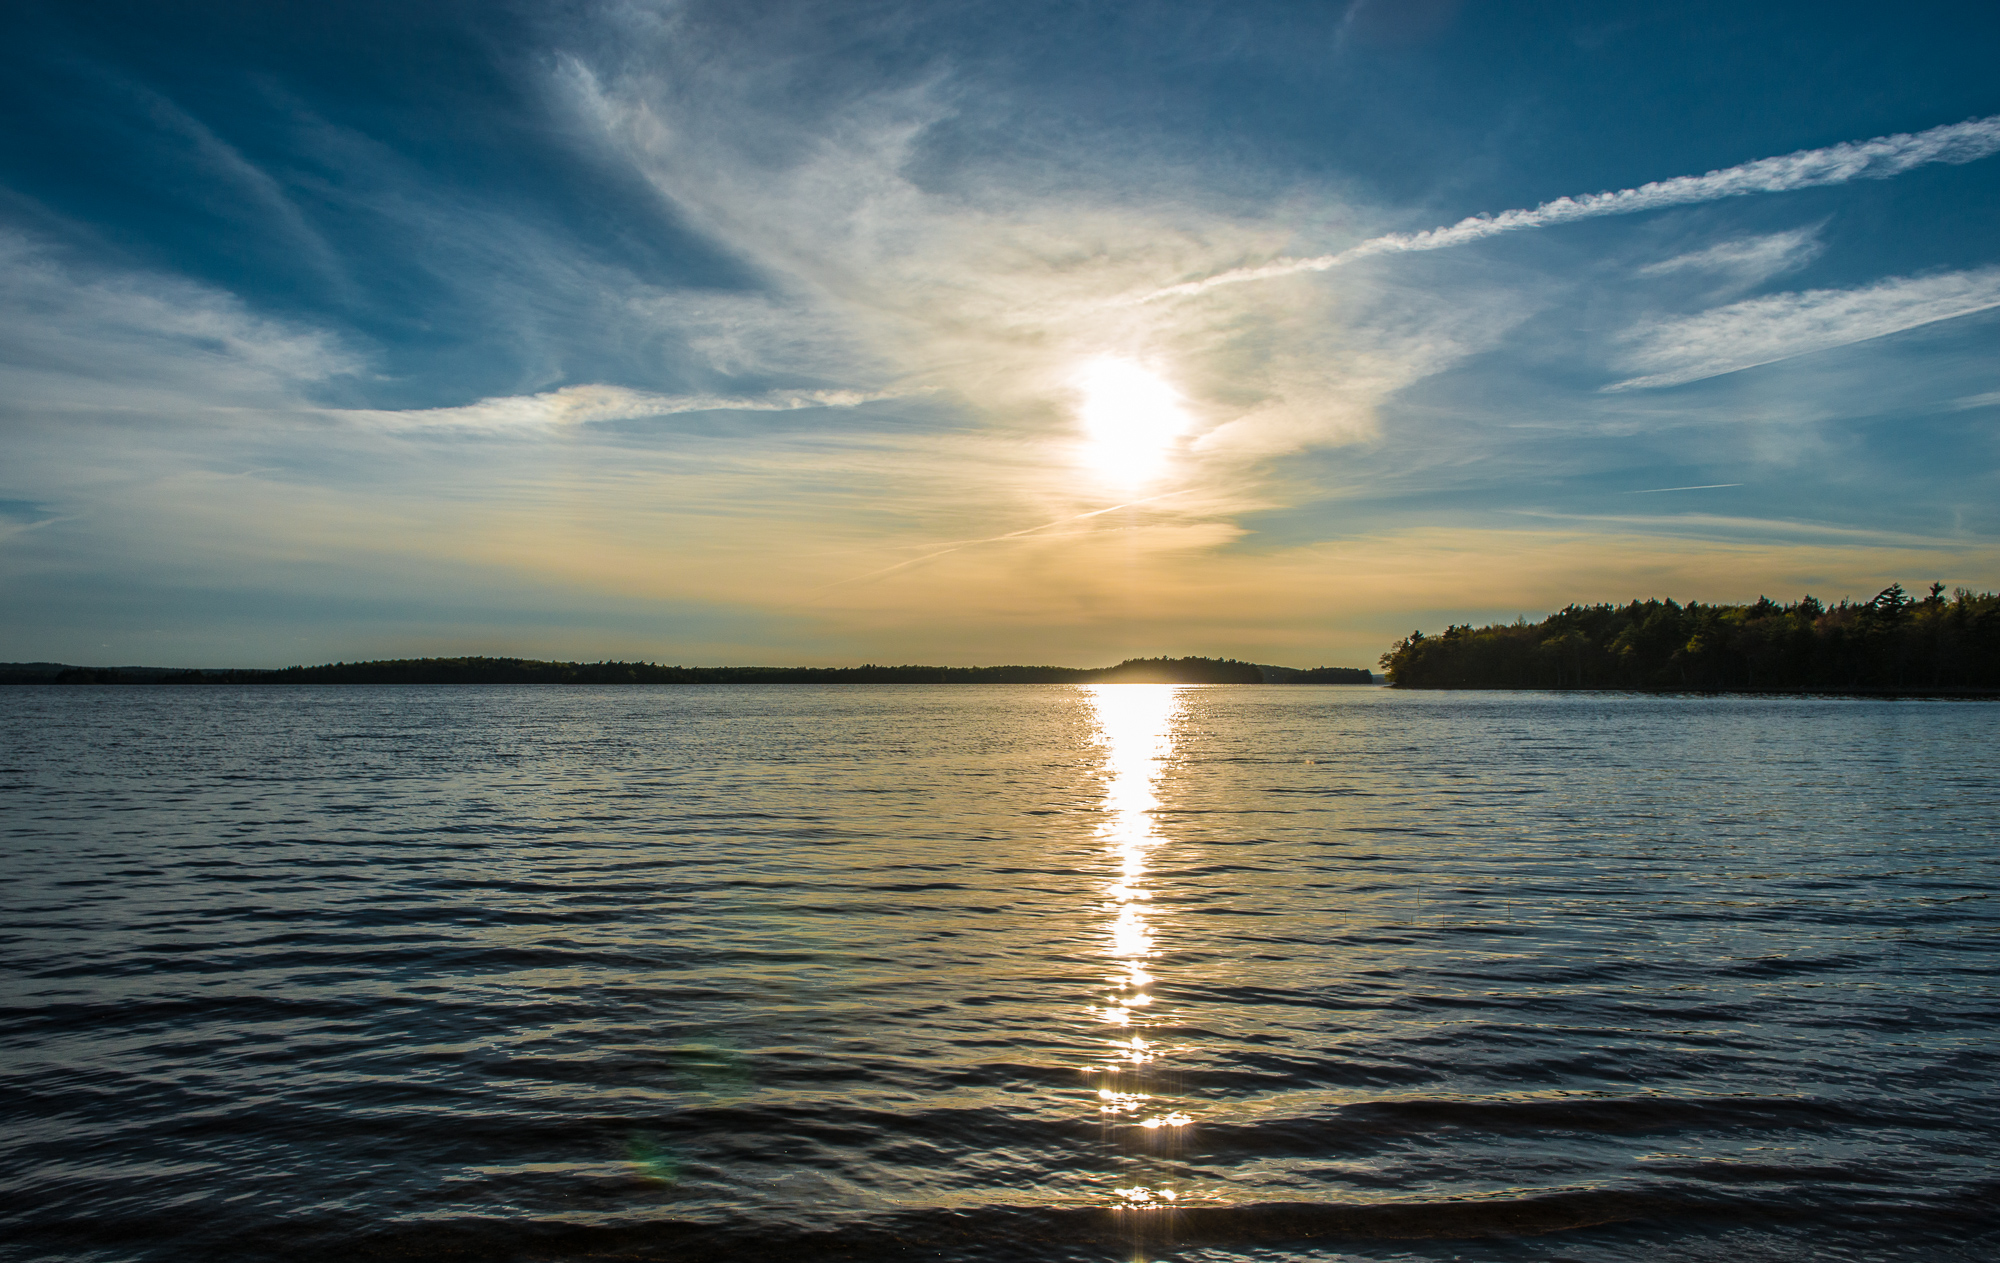 Kejimkujik Lake at sunset